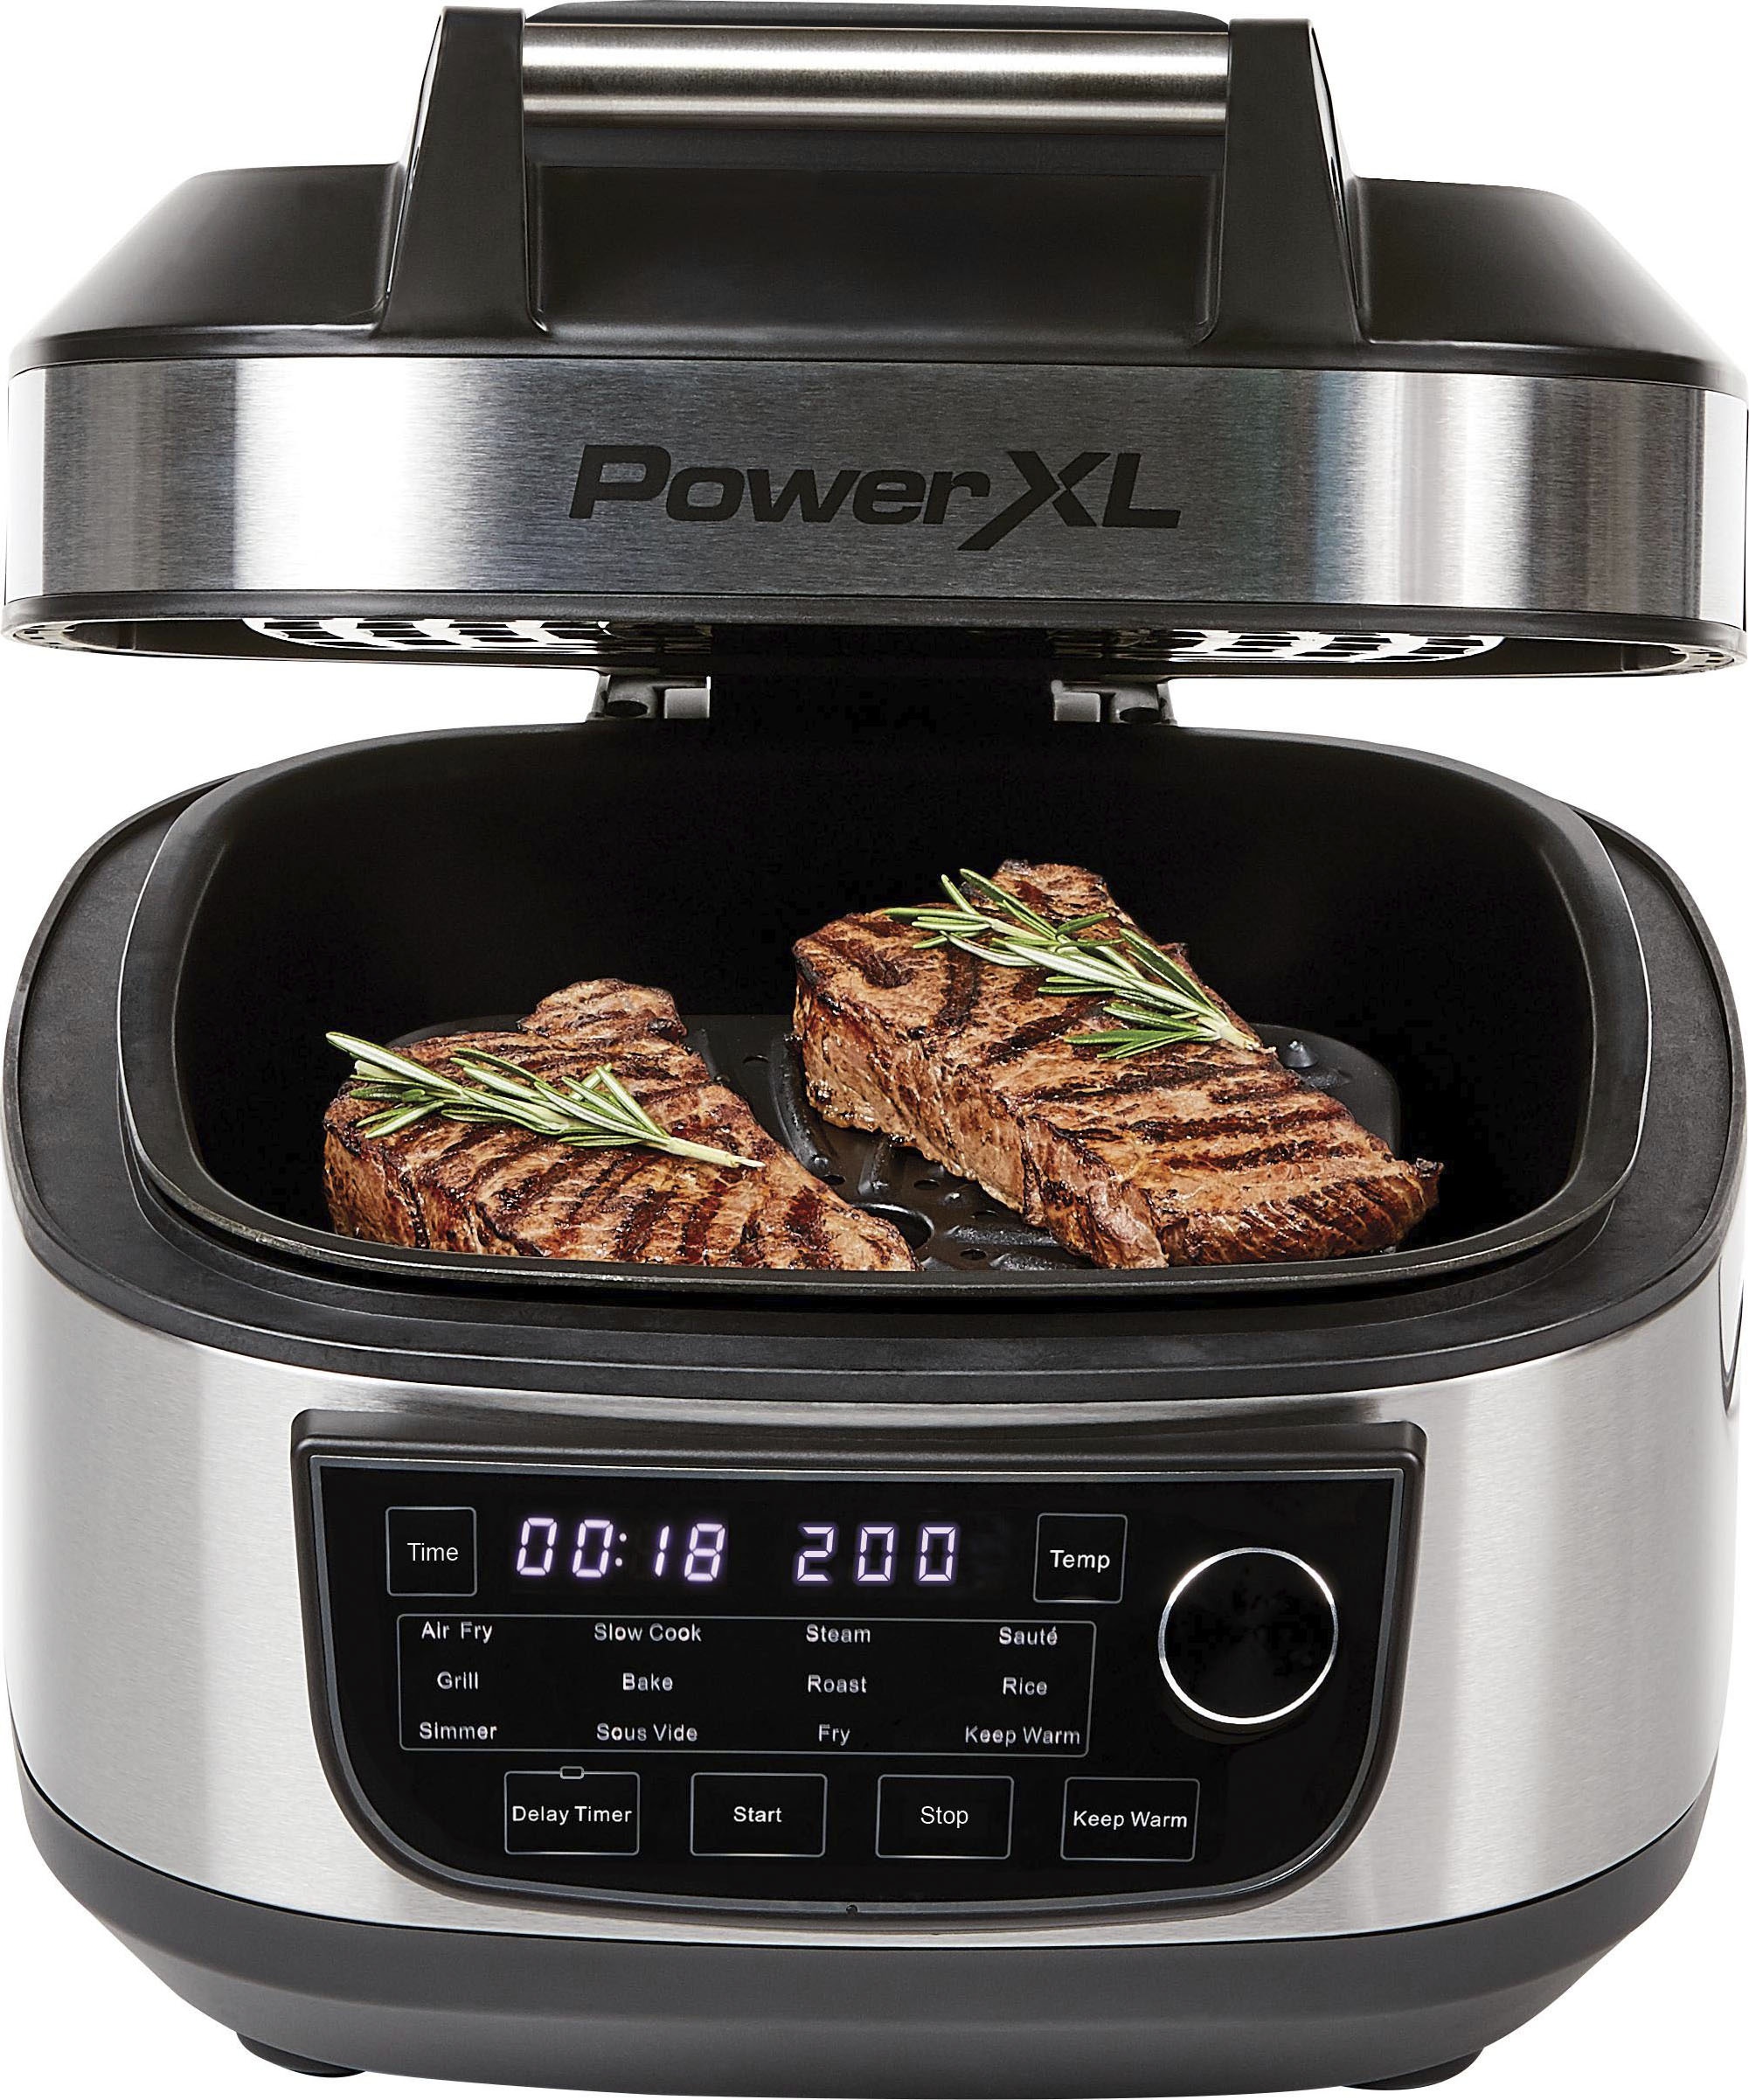 MEDIASHOP Küchenmaschine mit Kochfunktion "Power XL Multi Cooker M25658" Küchenmaschinen schwarz Küchenmaschinen